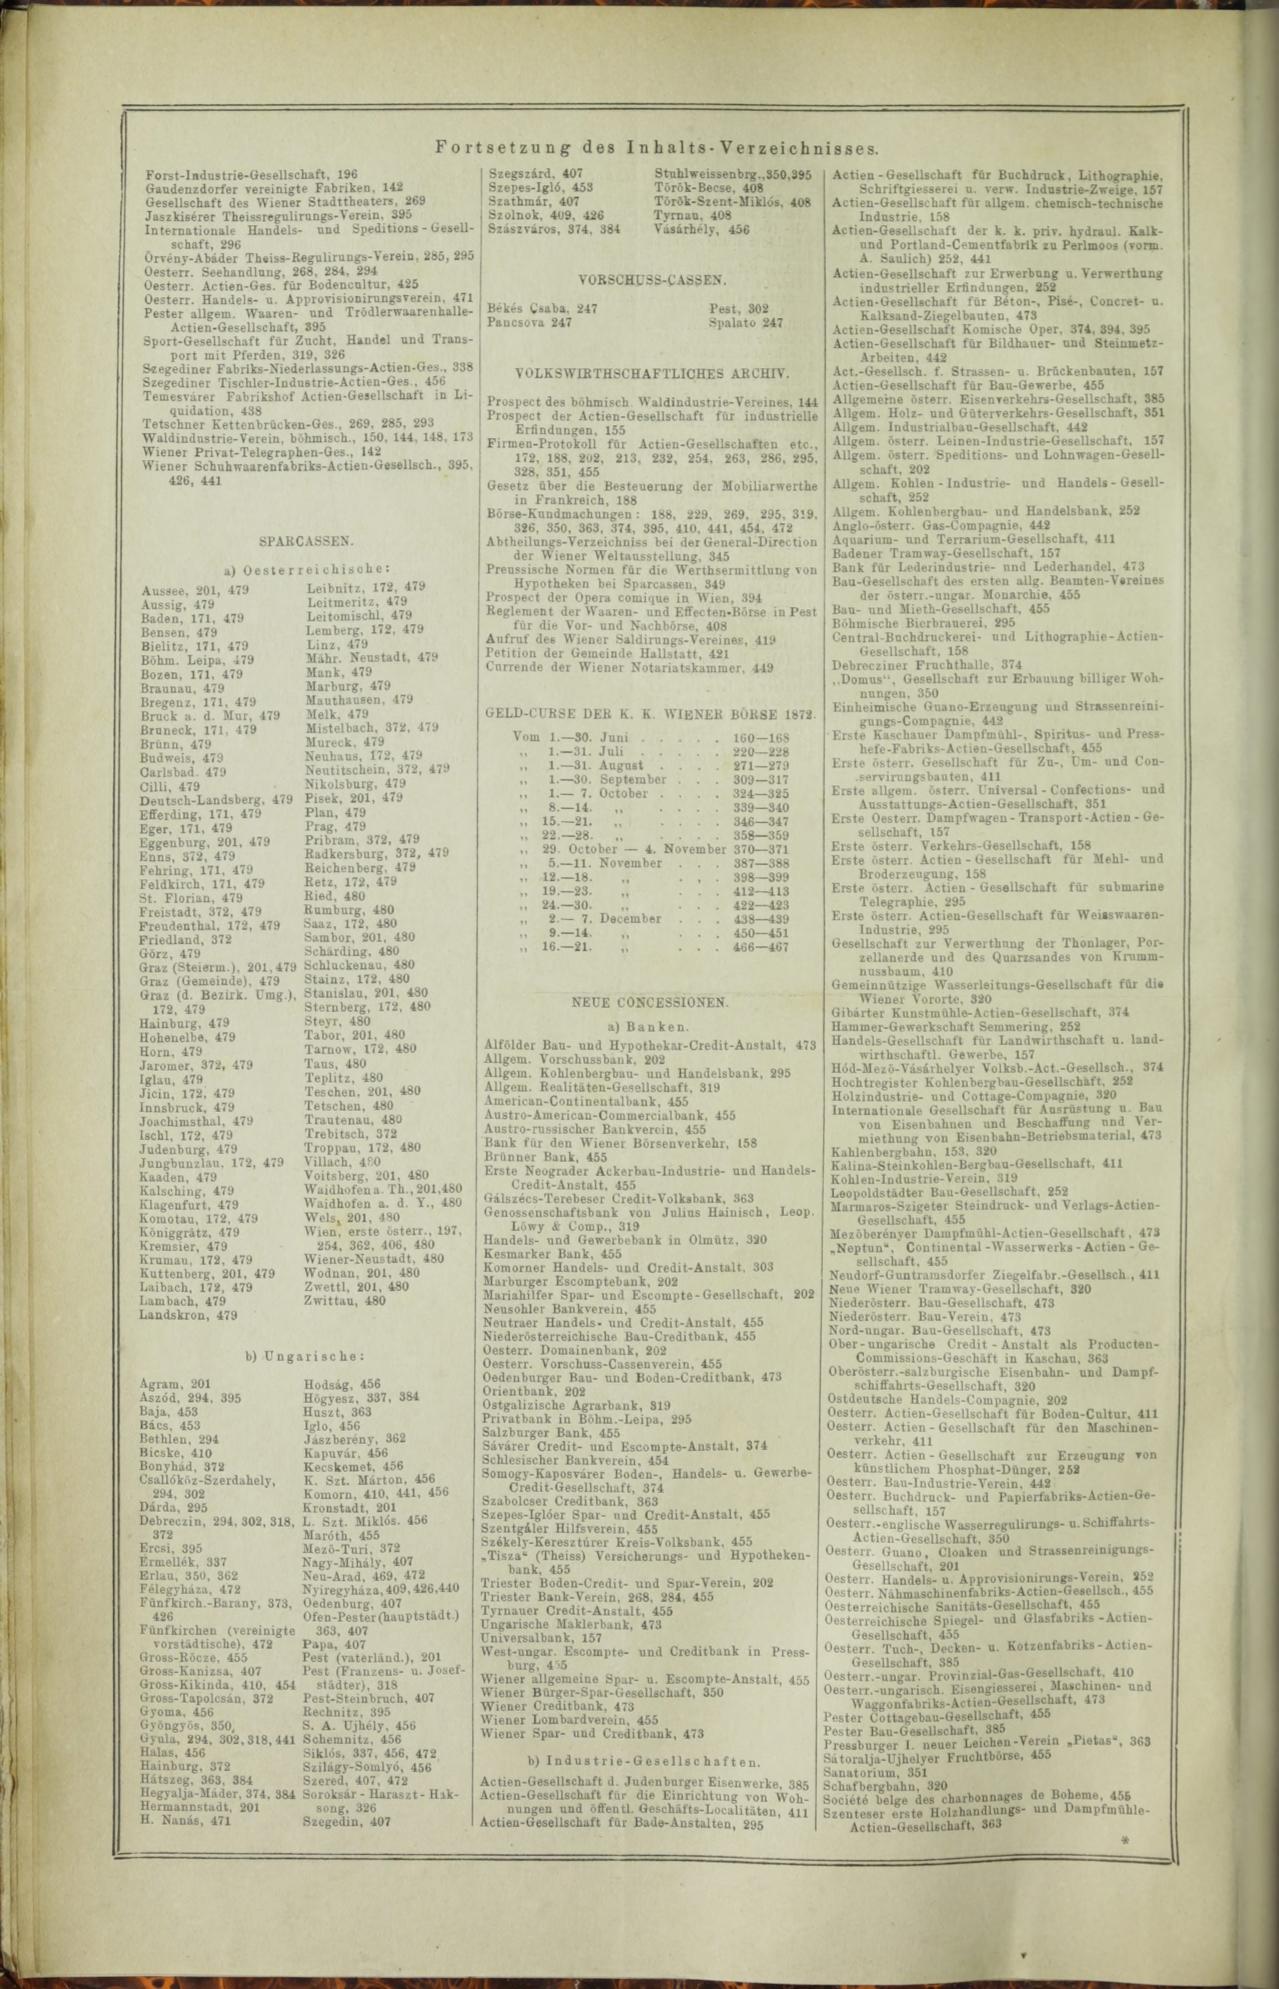 Der Tresor 06.11.1872 - Page 17